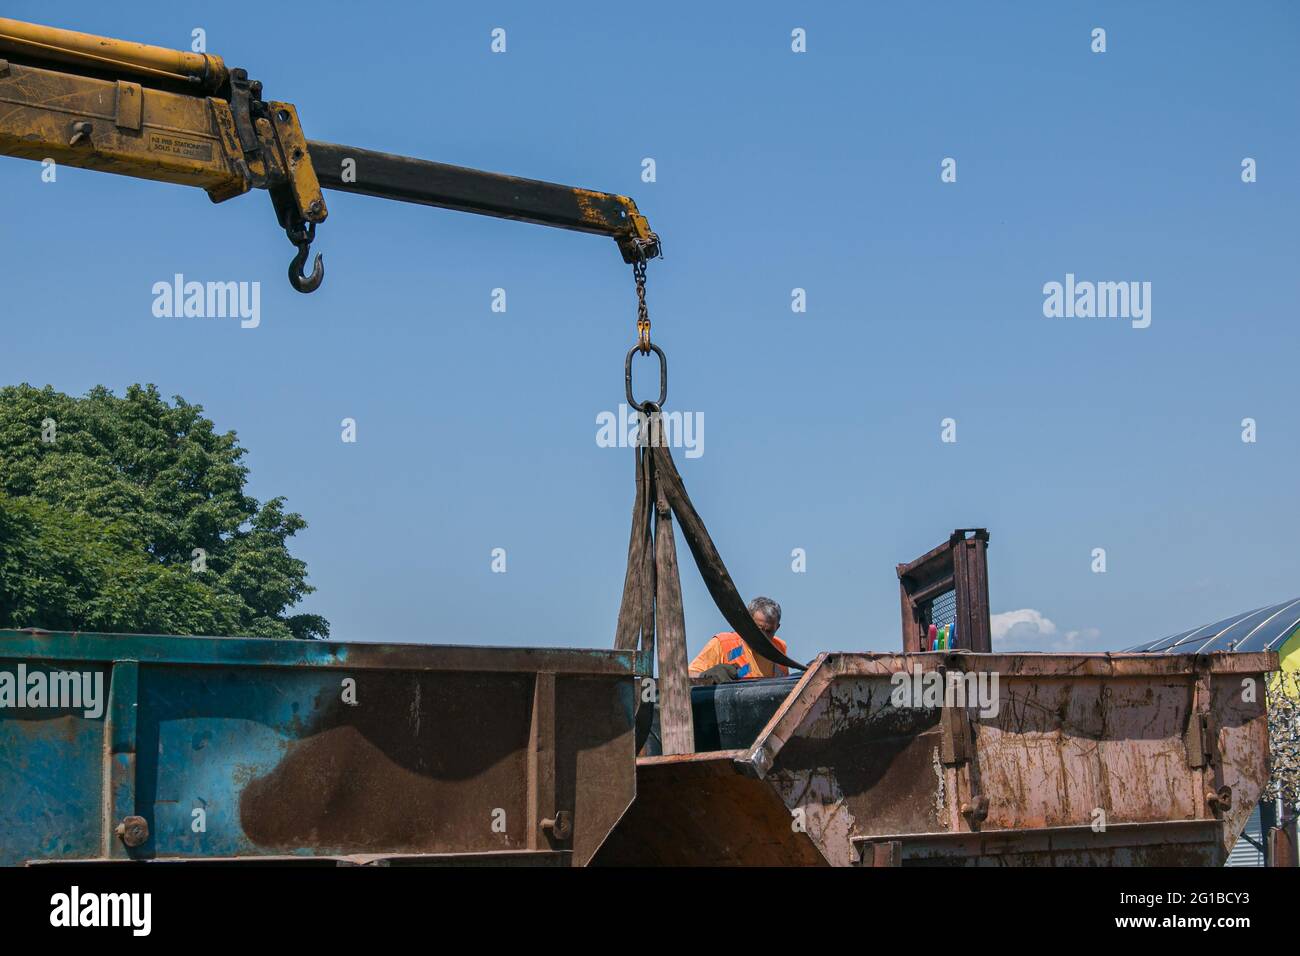 Dnepropetrovsk, Ukraine - 05.28.2021: Müllcontainer mit einem Kran in einen LKW laden. Slinger funktioniert. Stockfoto